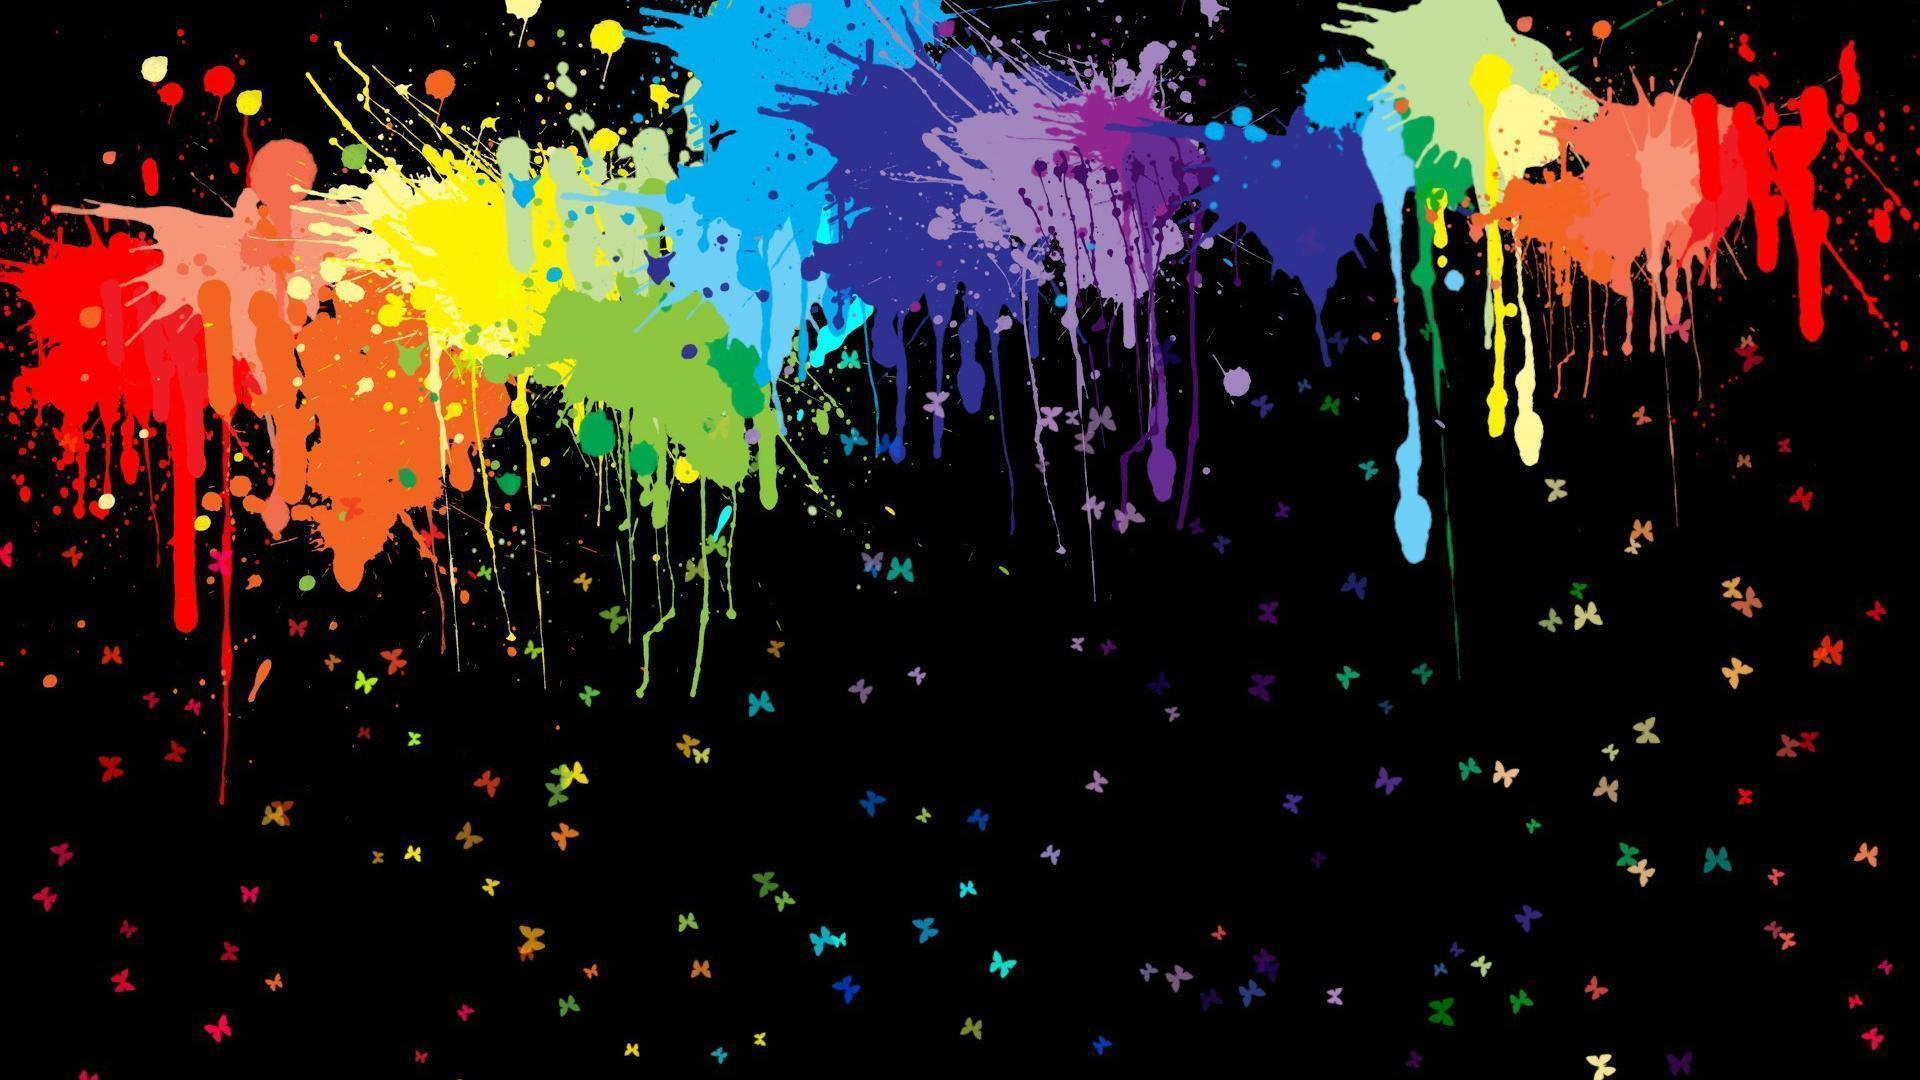 Art Wallpapers: Free HD Download [500+ HQ] | Unsplash